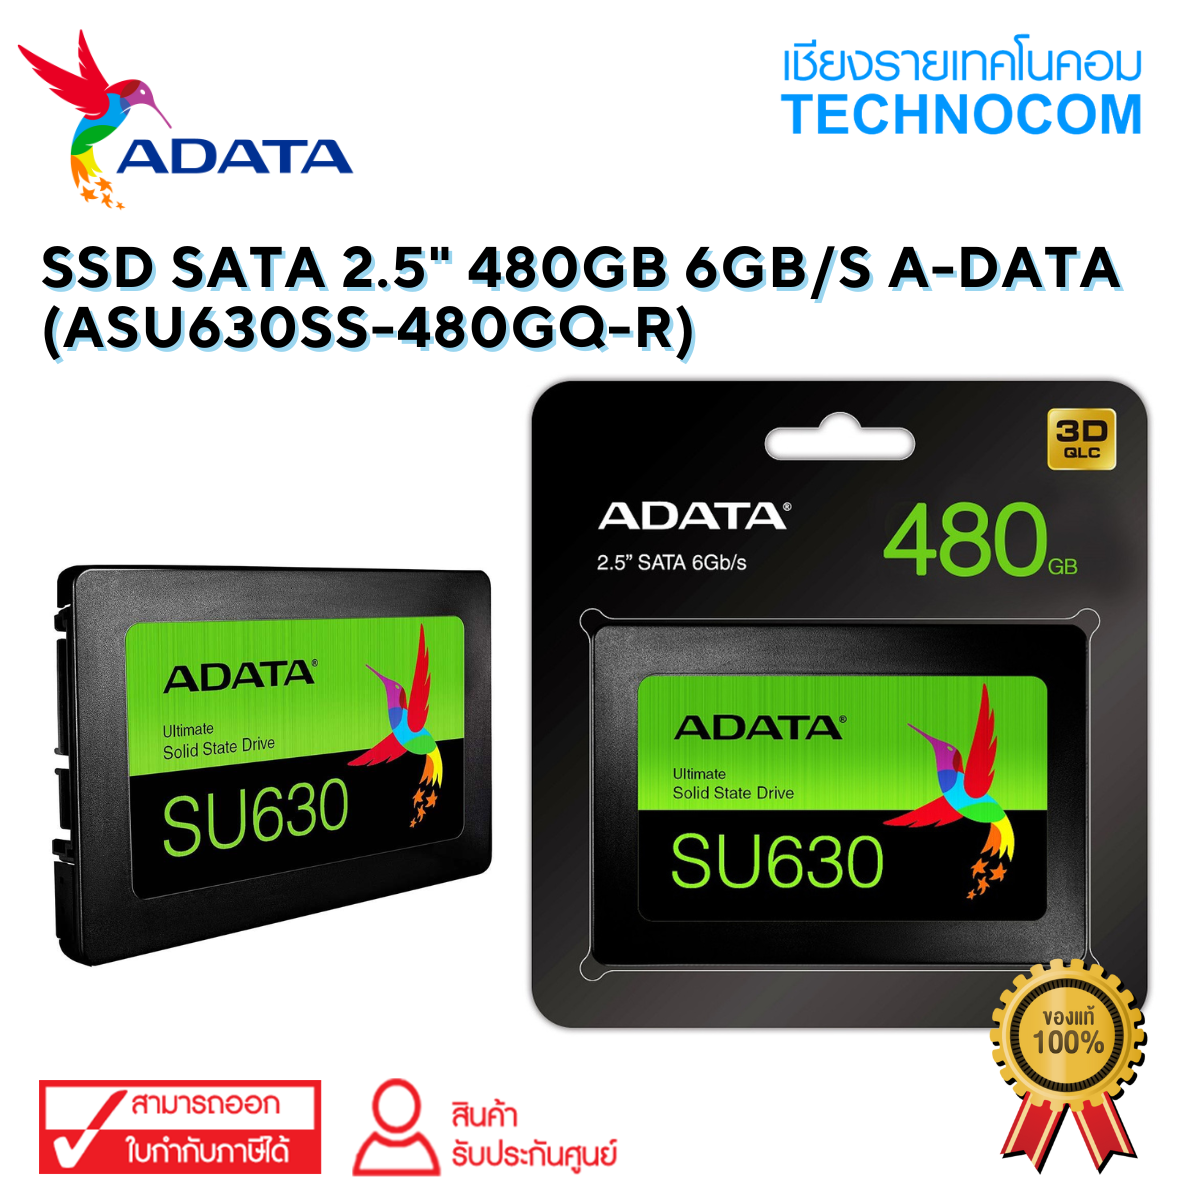 SSD SATA 2.5" 480GB 6Gb/s A-DATA (ASU630SS-480GQ-R)